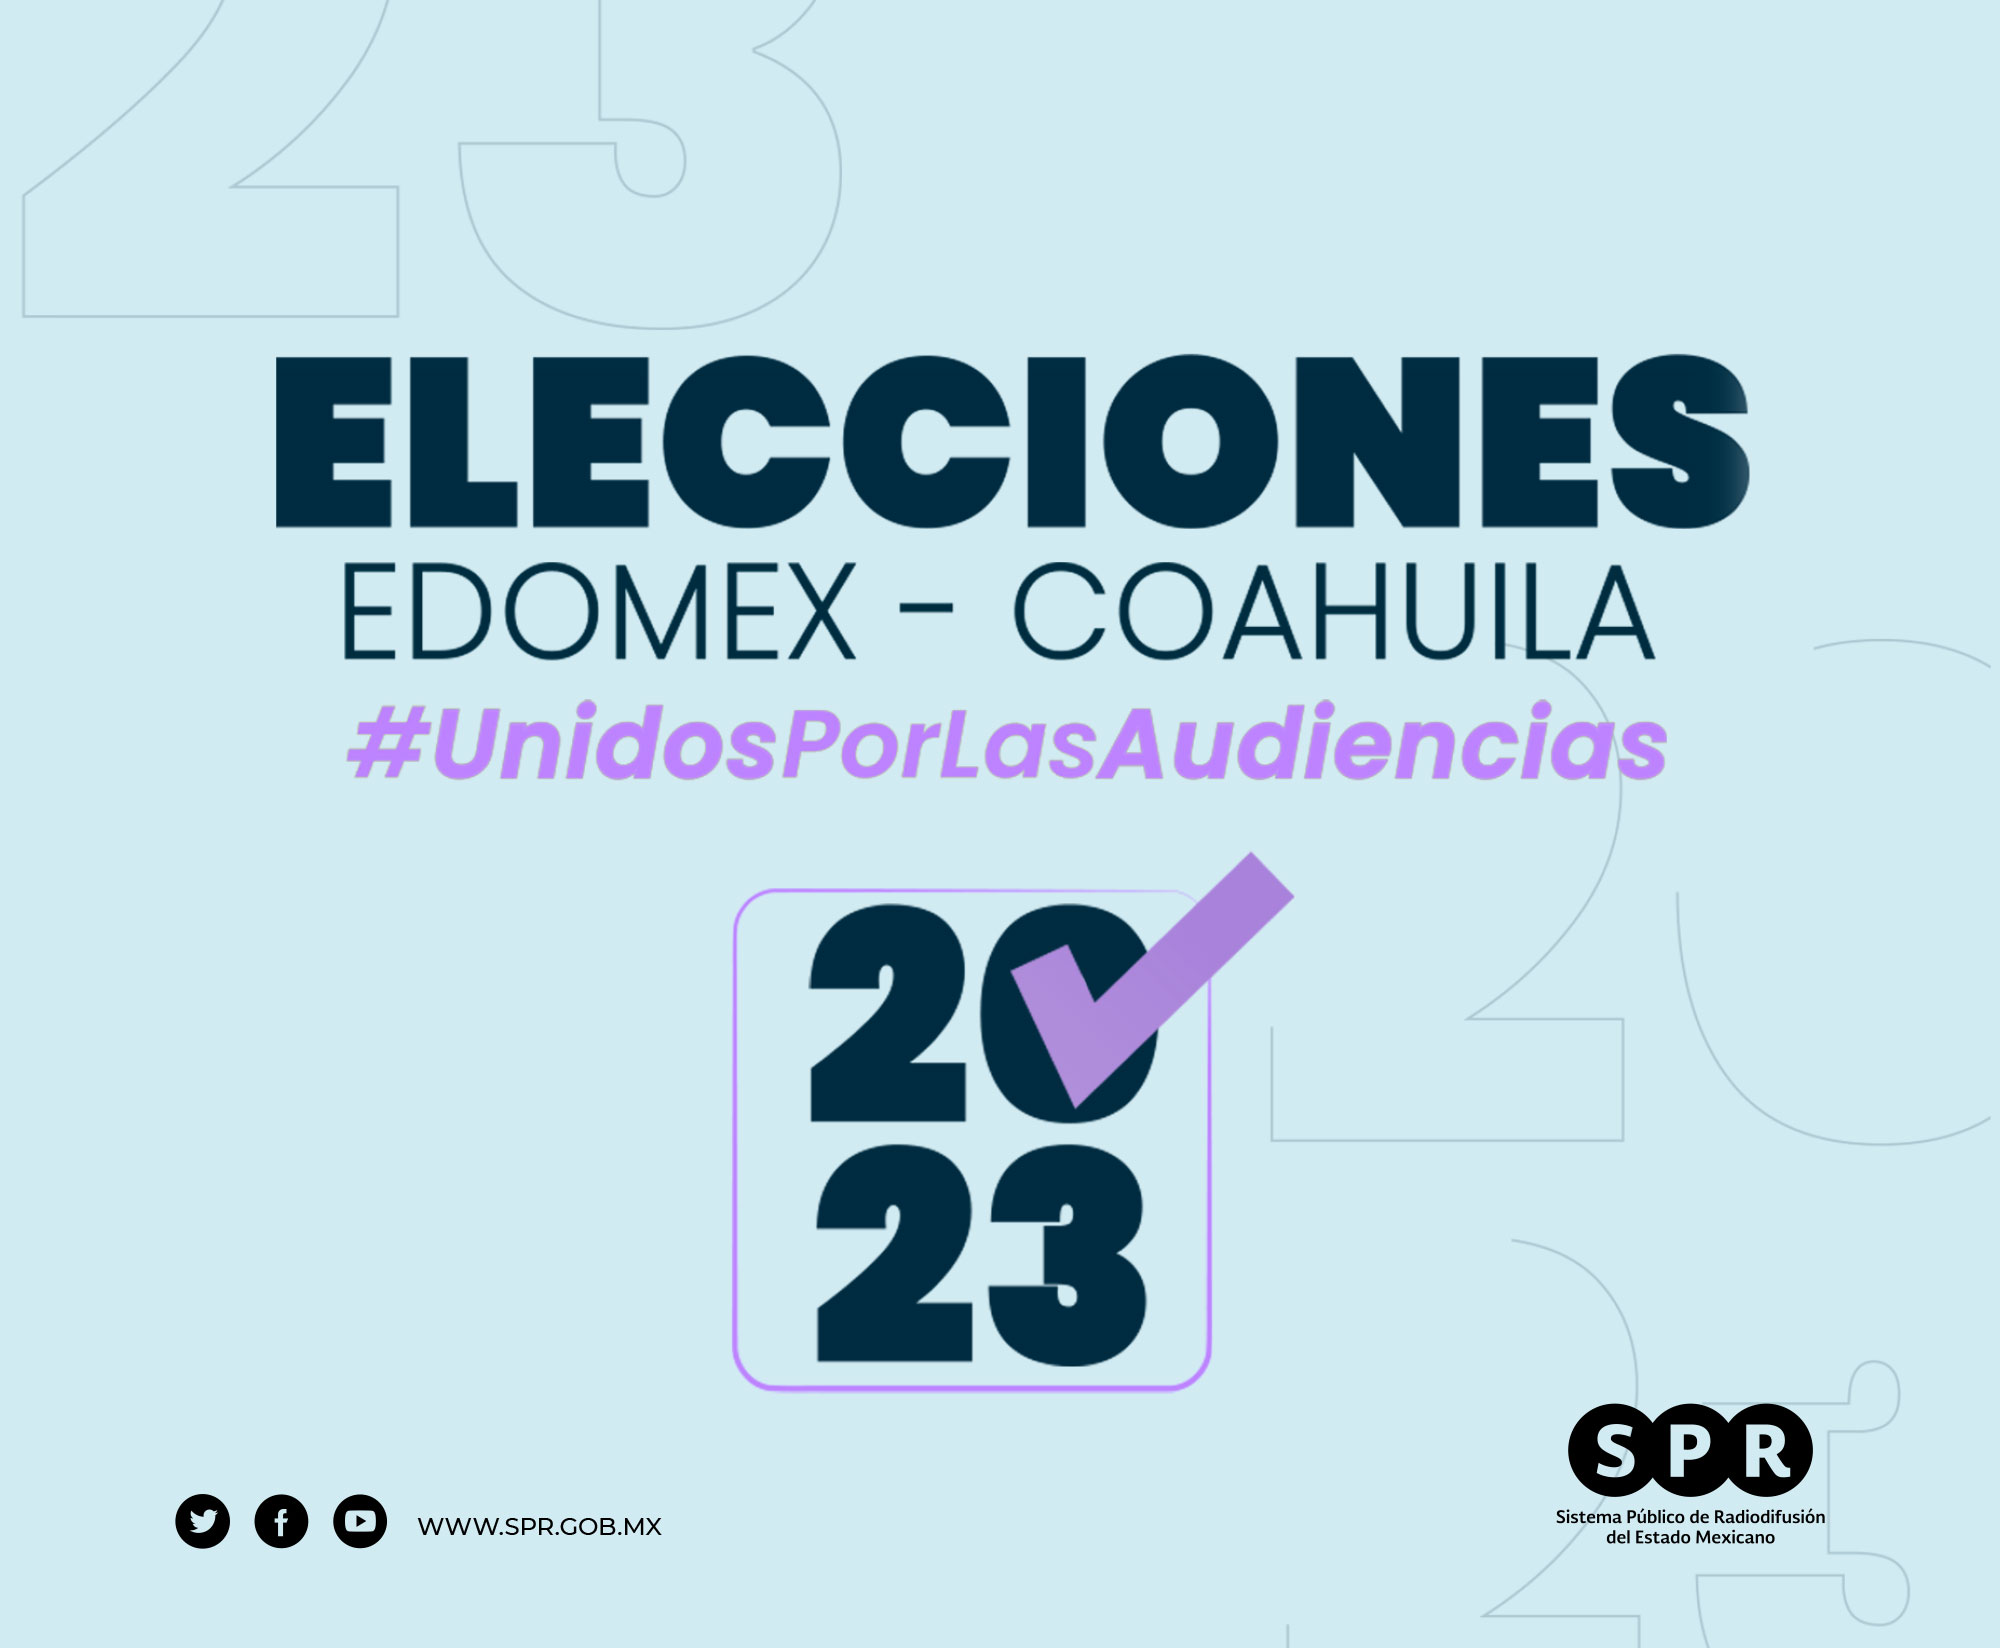 Realizarán medios públicos federales y estatales transmisión sobre la jornada de elecciones en el Estado de México y Coahuila